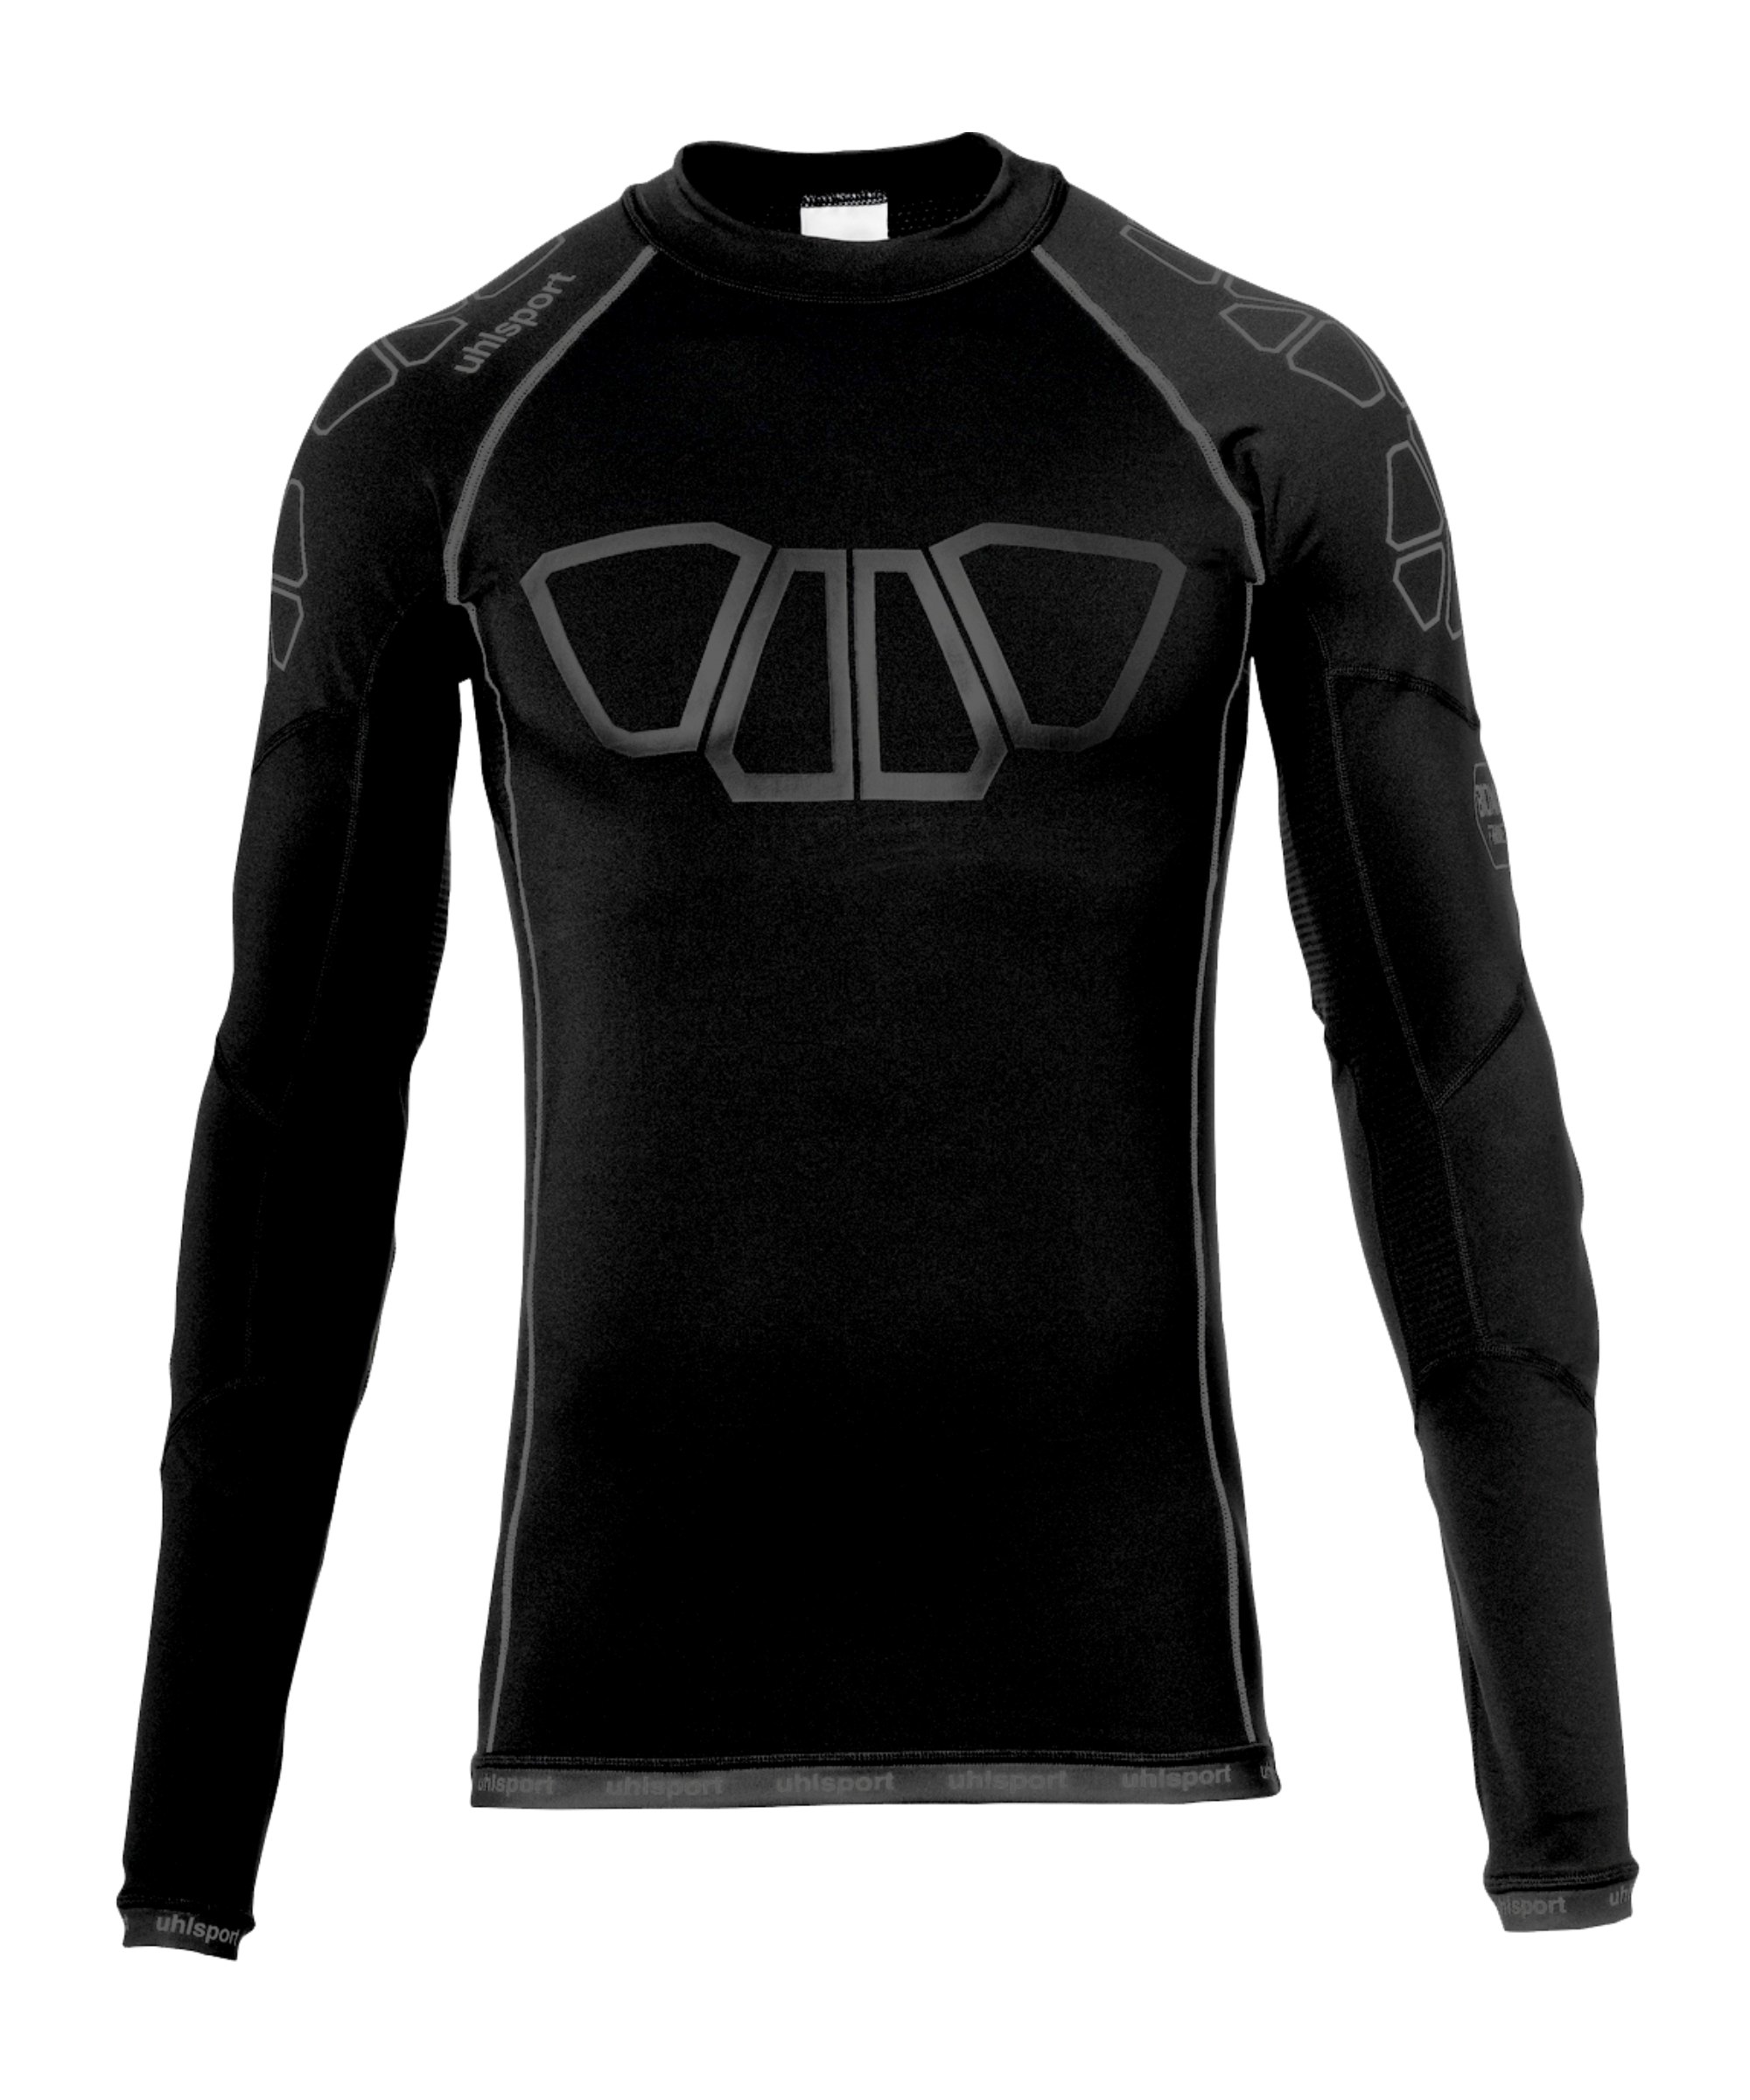 Uhlsport Bionikframe Sweatshirt Schwarz F02 - schwarz